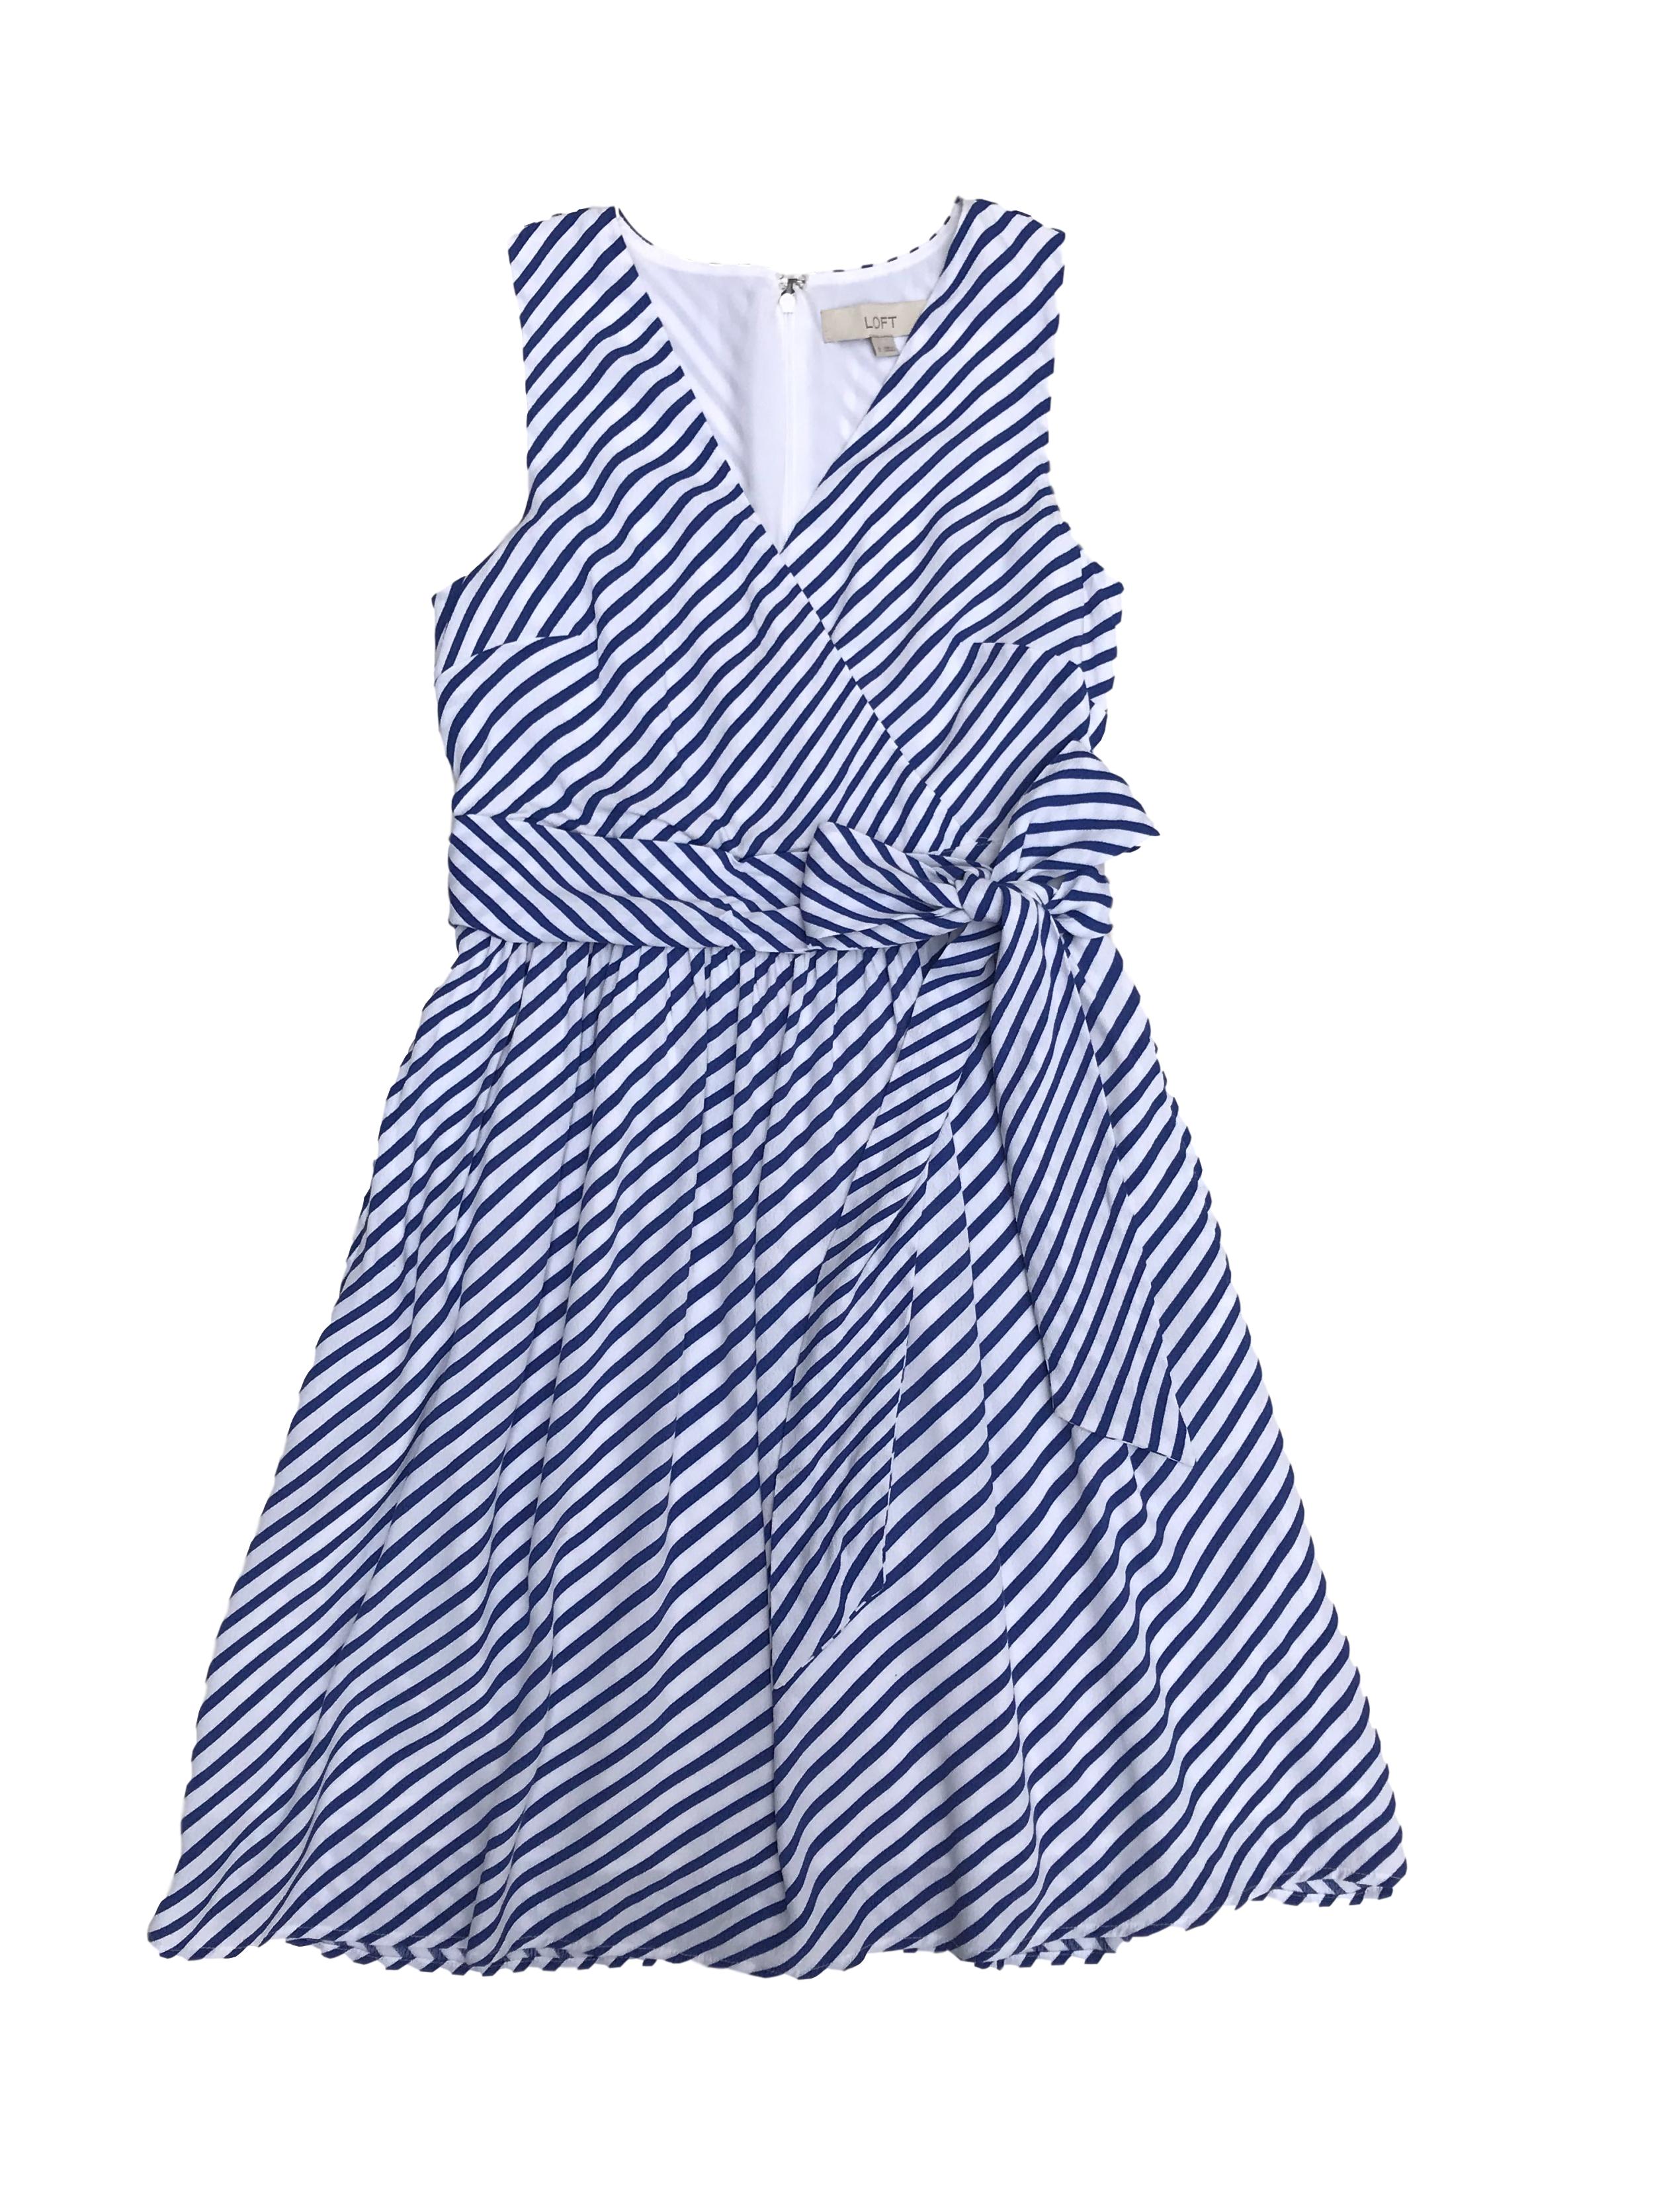 Vestido Loft de crepé blanco con líneas azules, forrado, cierre en la espalda, escote cruzado y falda con bolsillos. Busto 90cm Cintura 70cm Largo 90cm. Precio original S/ 350